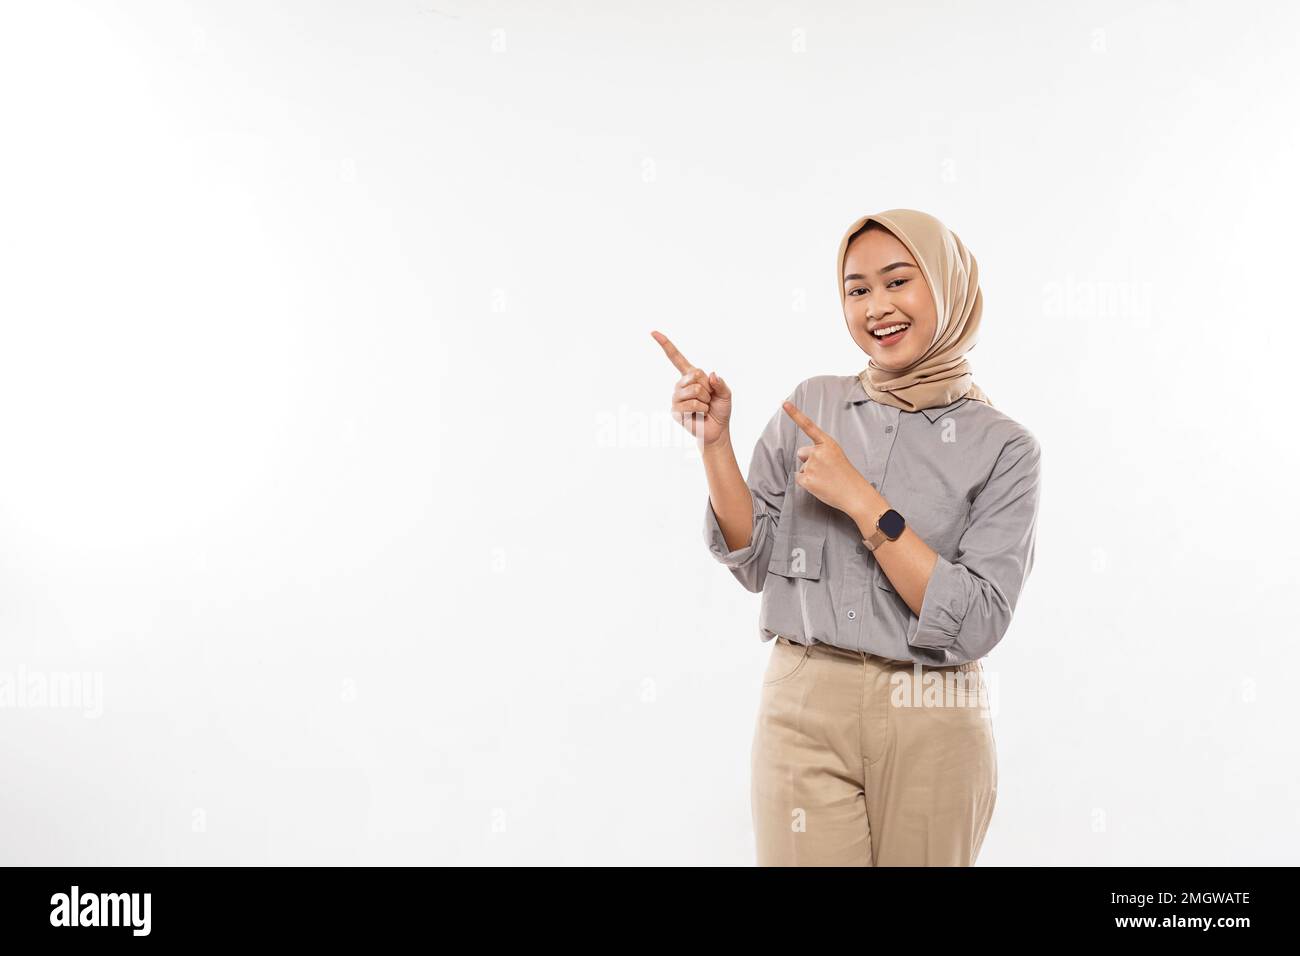 femme avec hijab pointant avec enthousiasme sur l'espace vide à ses côtés Banque D'Images